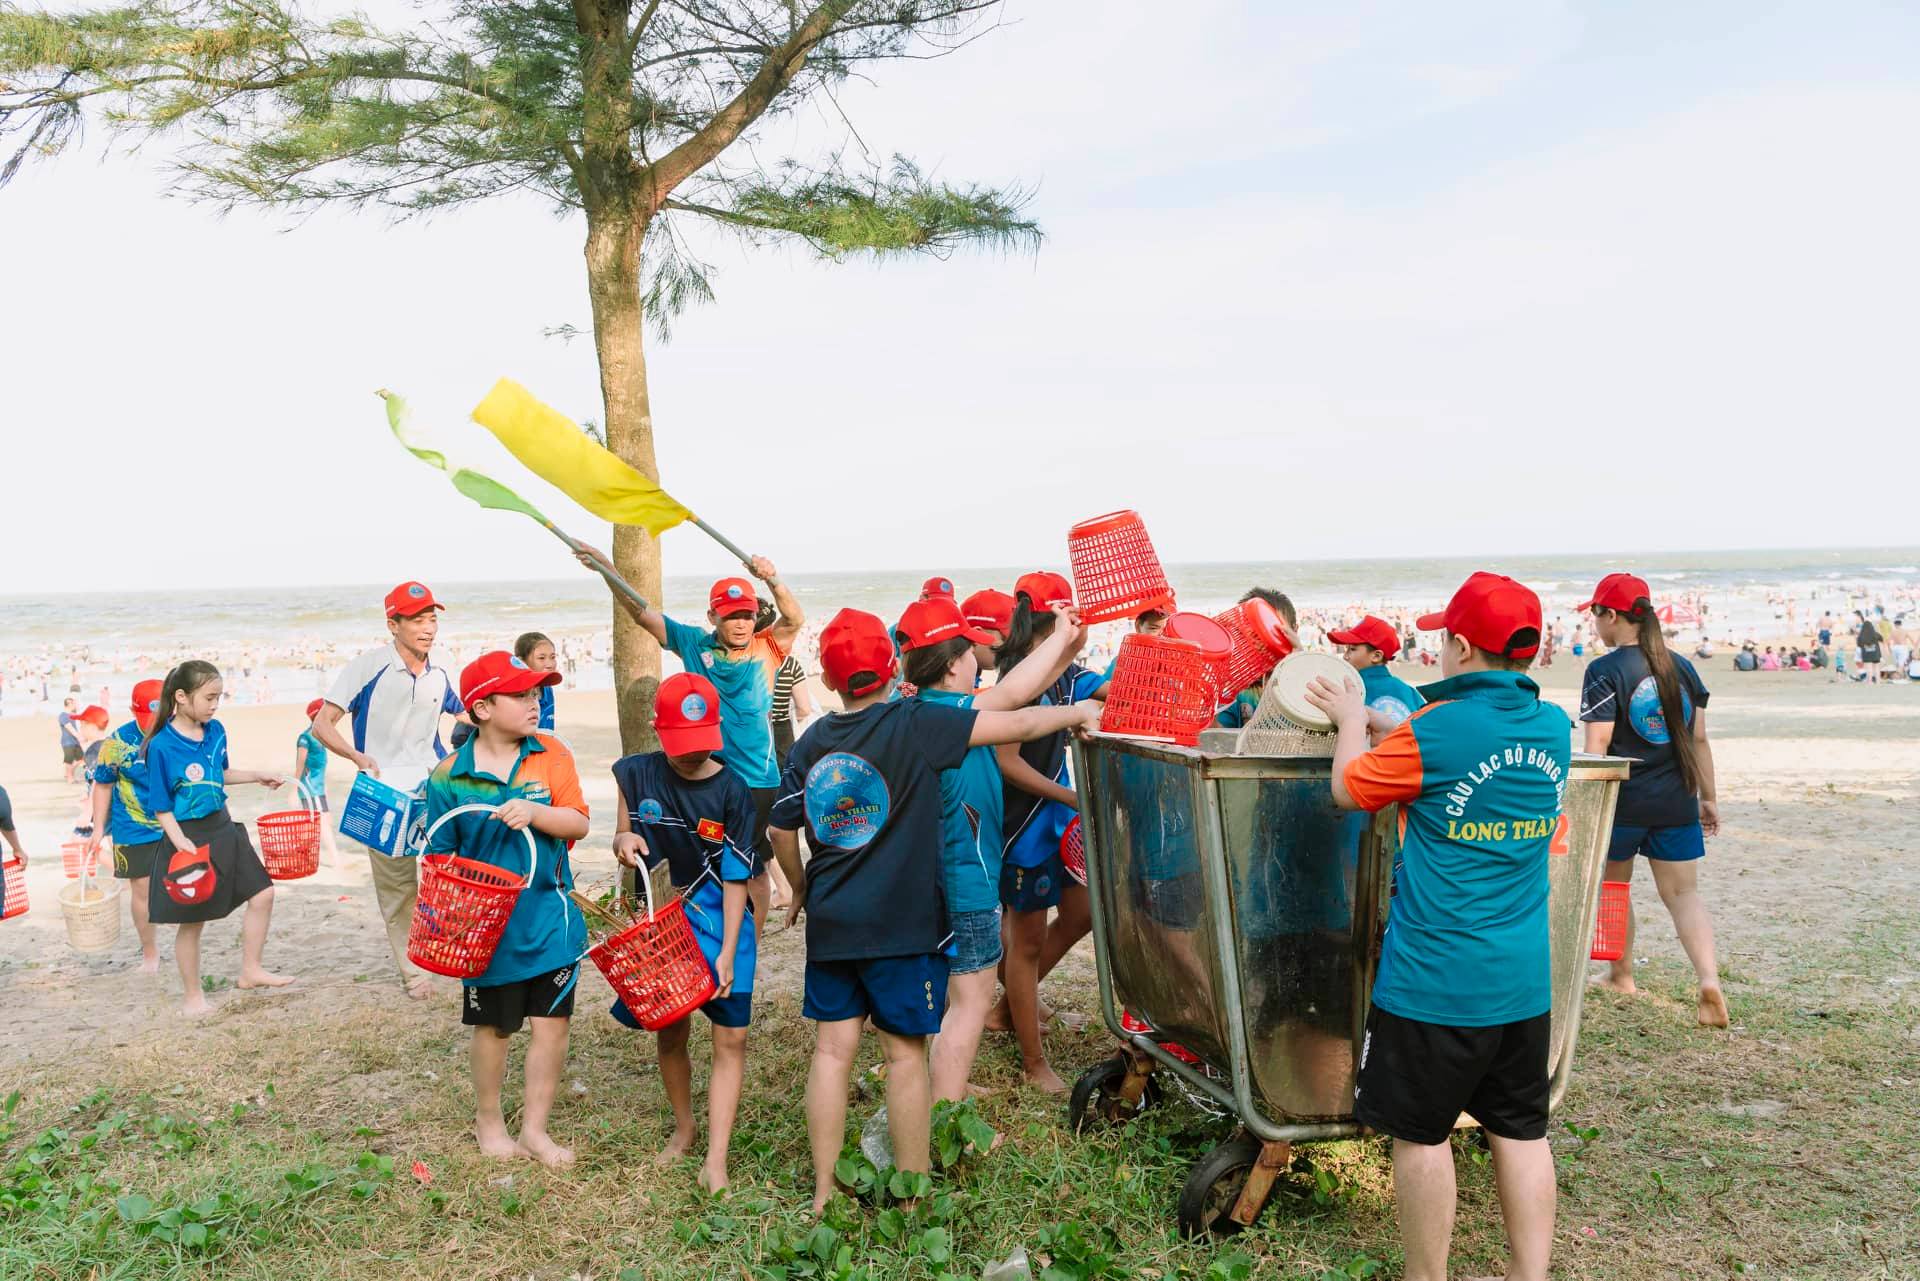 Biệt đội nhí nhặt rác ở biển Sầm Sơn - Ảnh 12.